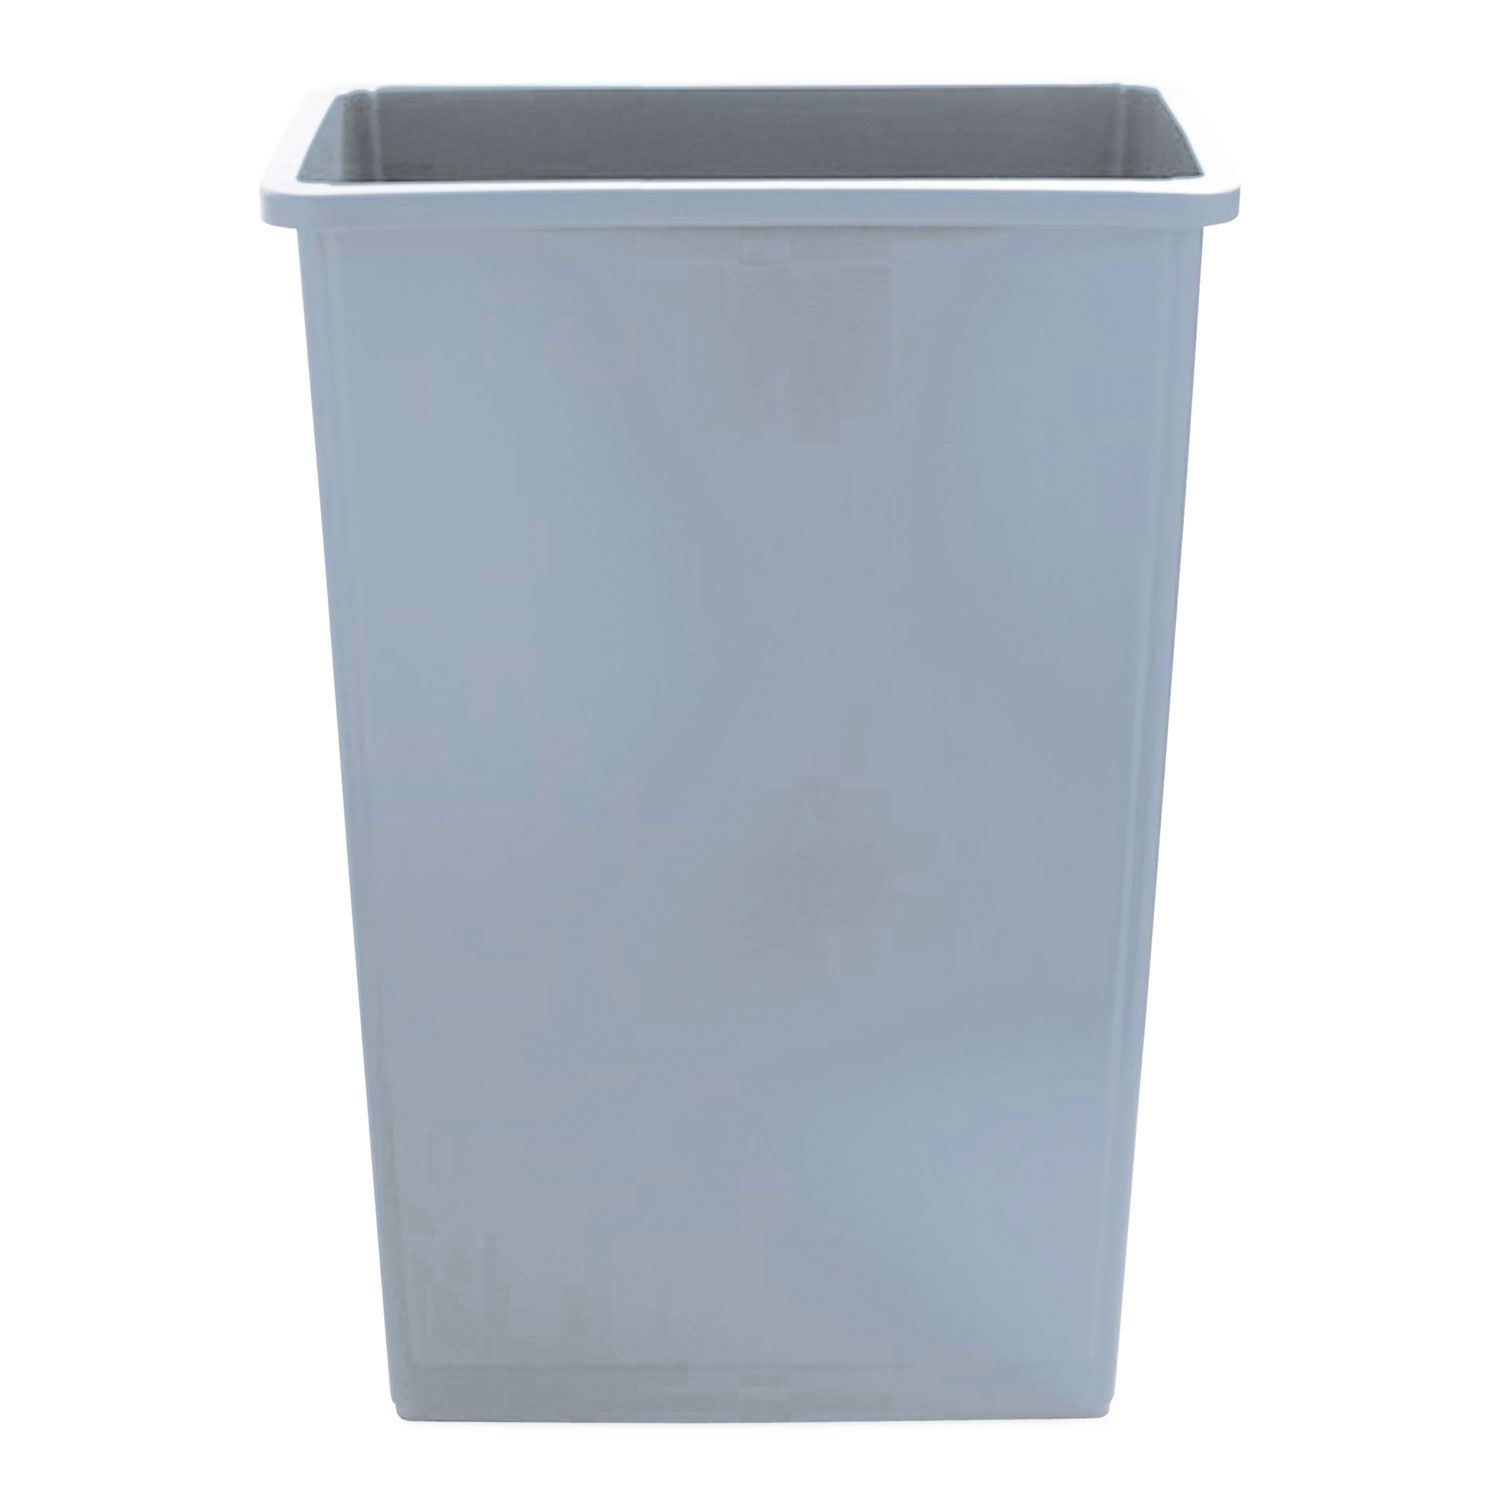 Slim Waste Container - 23 Gallon, Gray, Plastic, 4/Case